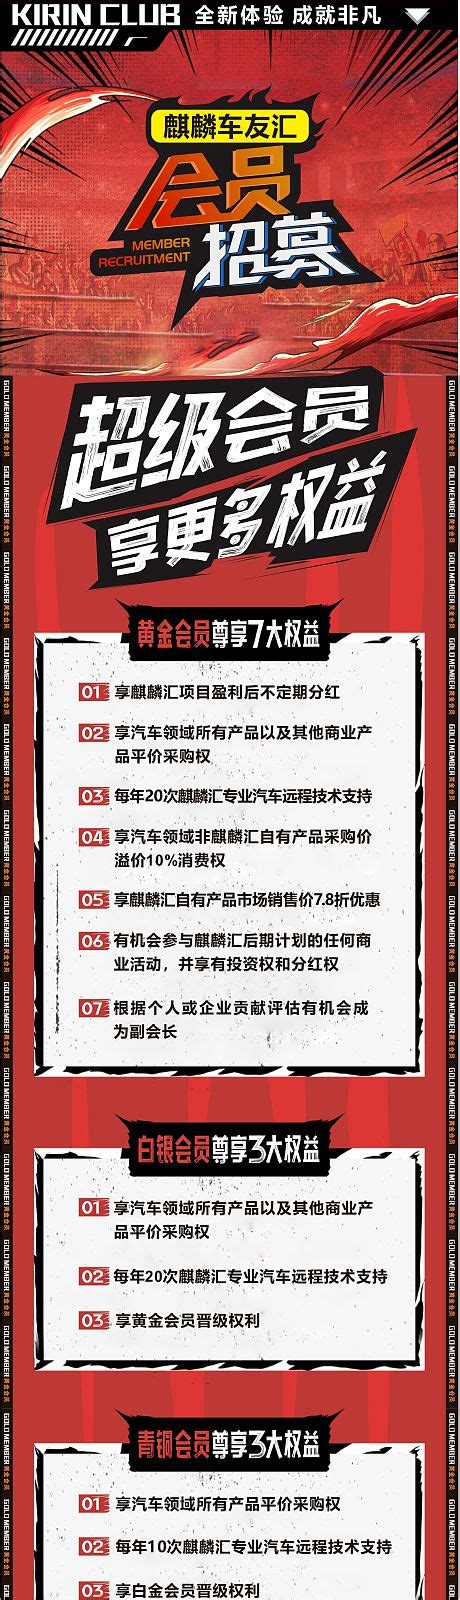 中国移动车友计划宣传海报PSD素材免费下载_红动中国